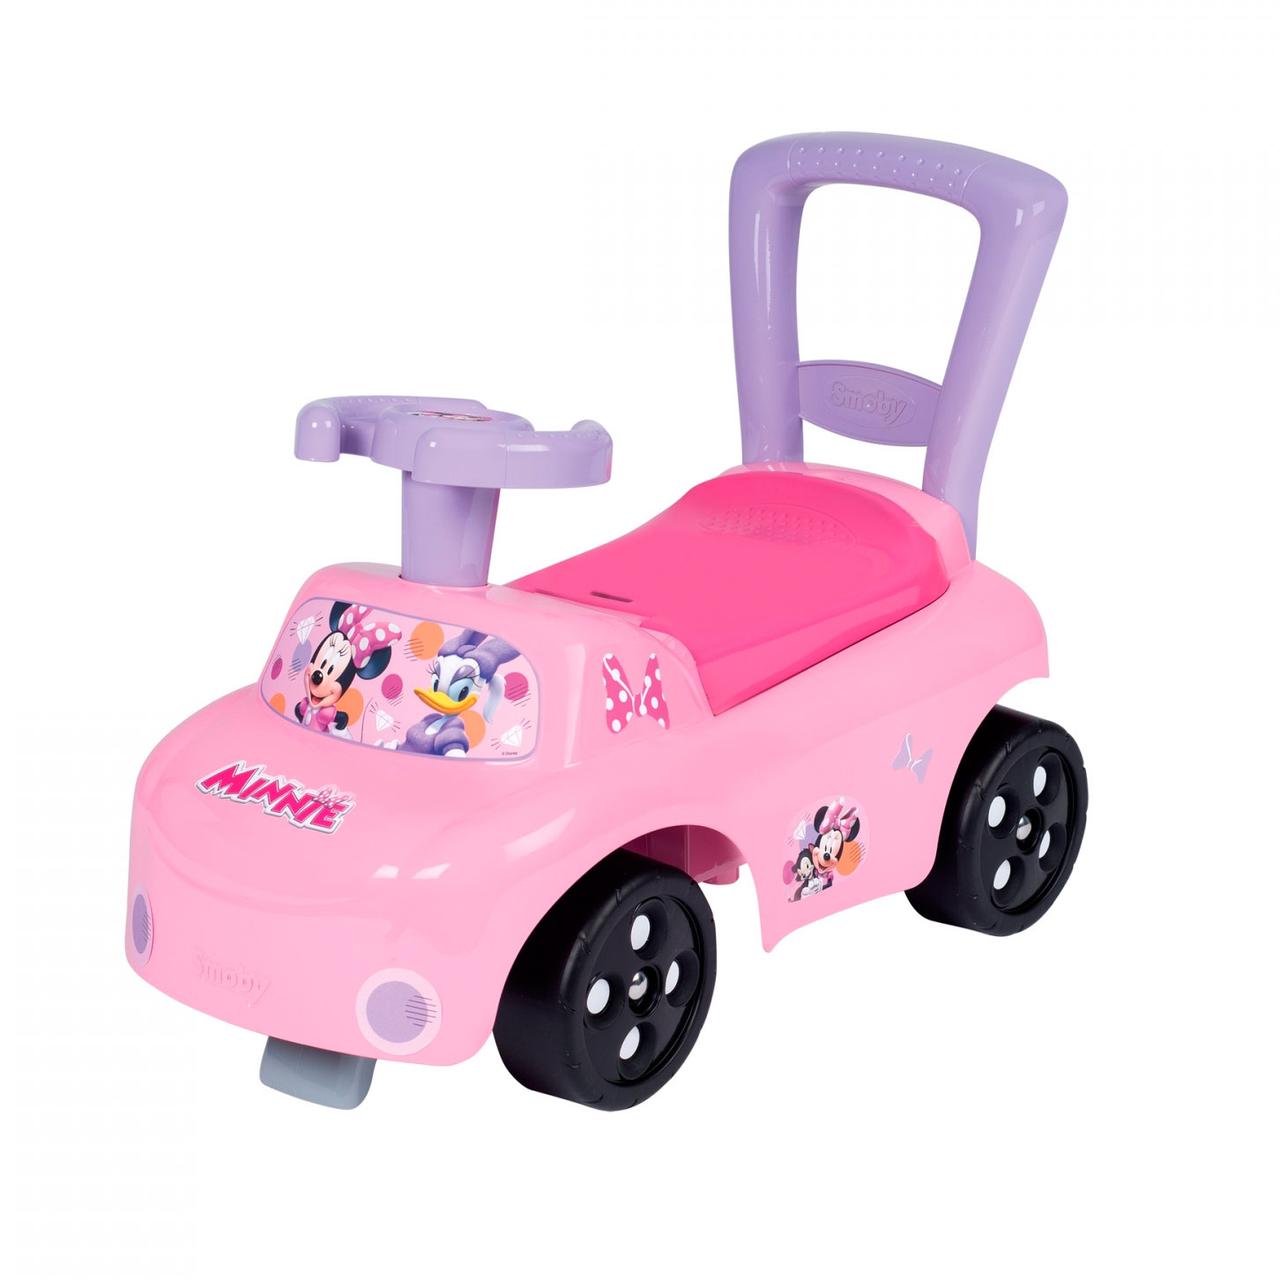 Дитяча машинка-каталка Minnie Mouse Pink Smoby IG-OL185771 GM, код: 8249551